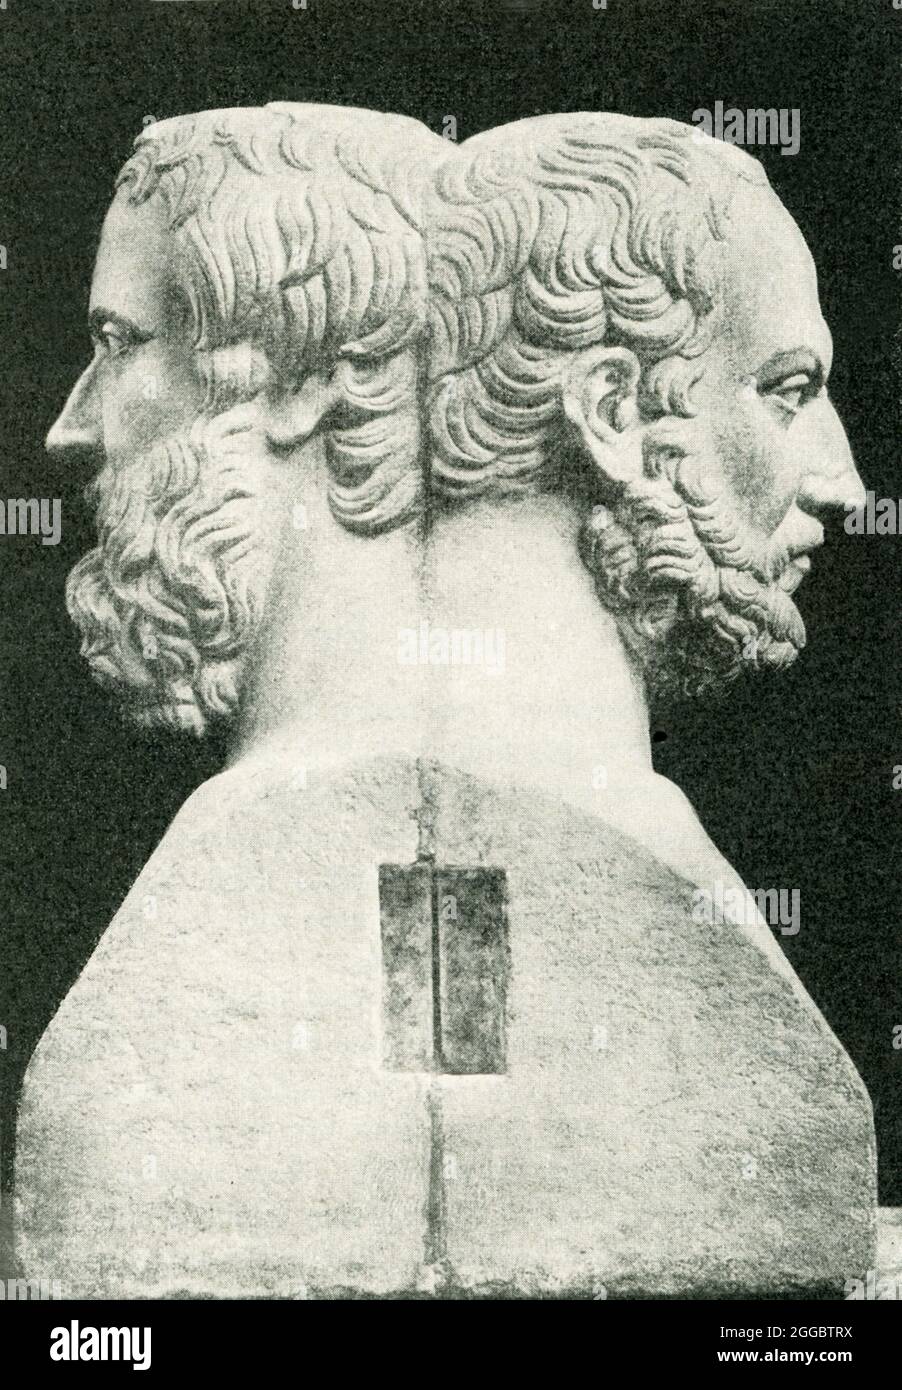 Hier sehen wir einen Doppelherm der antiken griechischen Historiker Herodot und Thukydides. In der antiken griechischen Religion war ein Herm ein heiliger Gegenstand aus Stein, der mit dem Kult des Hermes, dem fruchtbarkeitsgott, verbunden war. Stockfoto